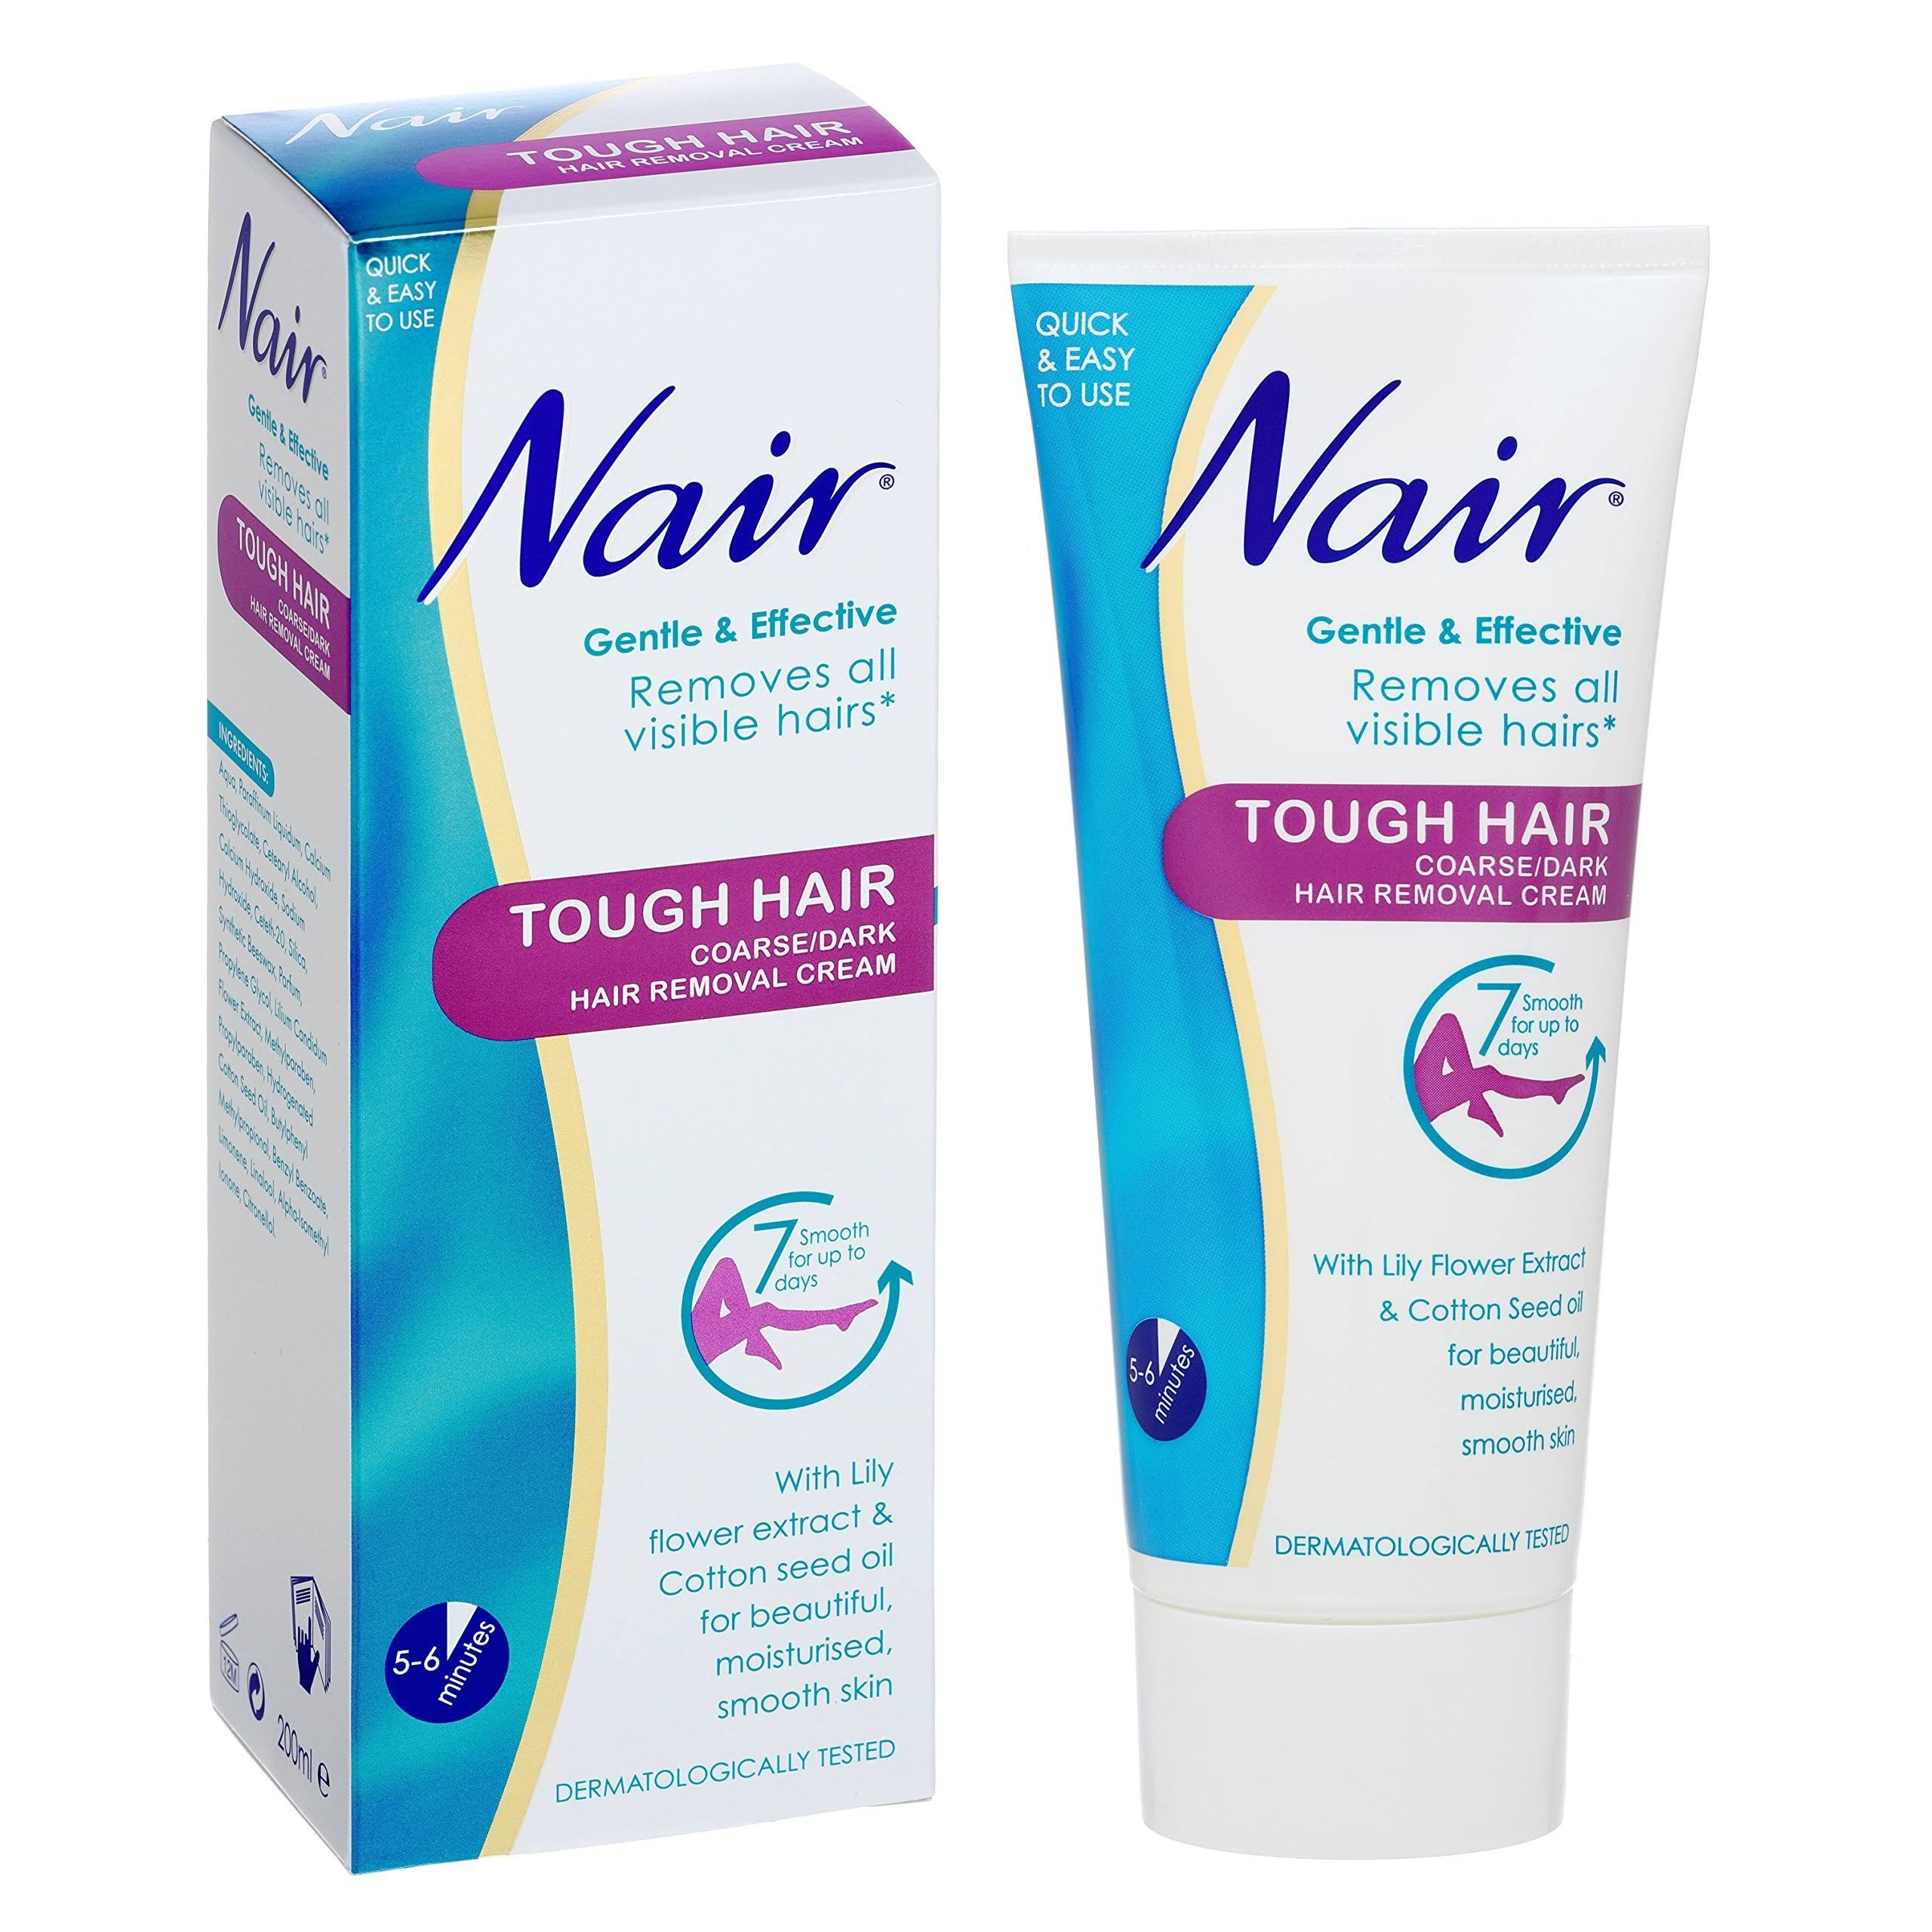 Nair Tough Hair Coarse Dark Hair Removal Cream - 200ml